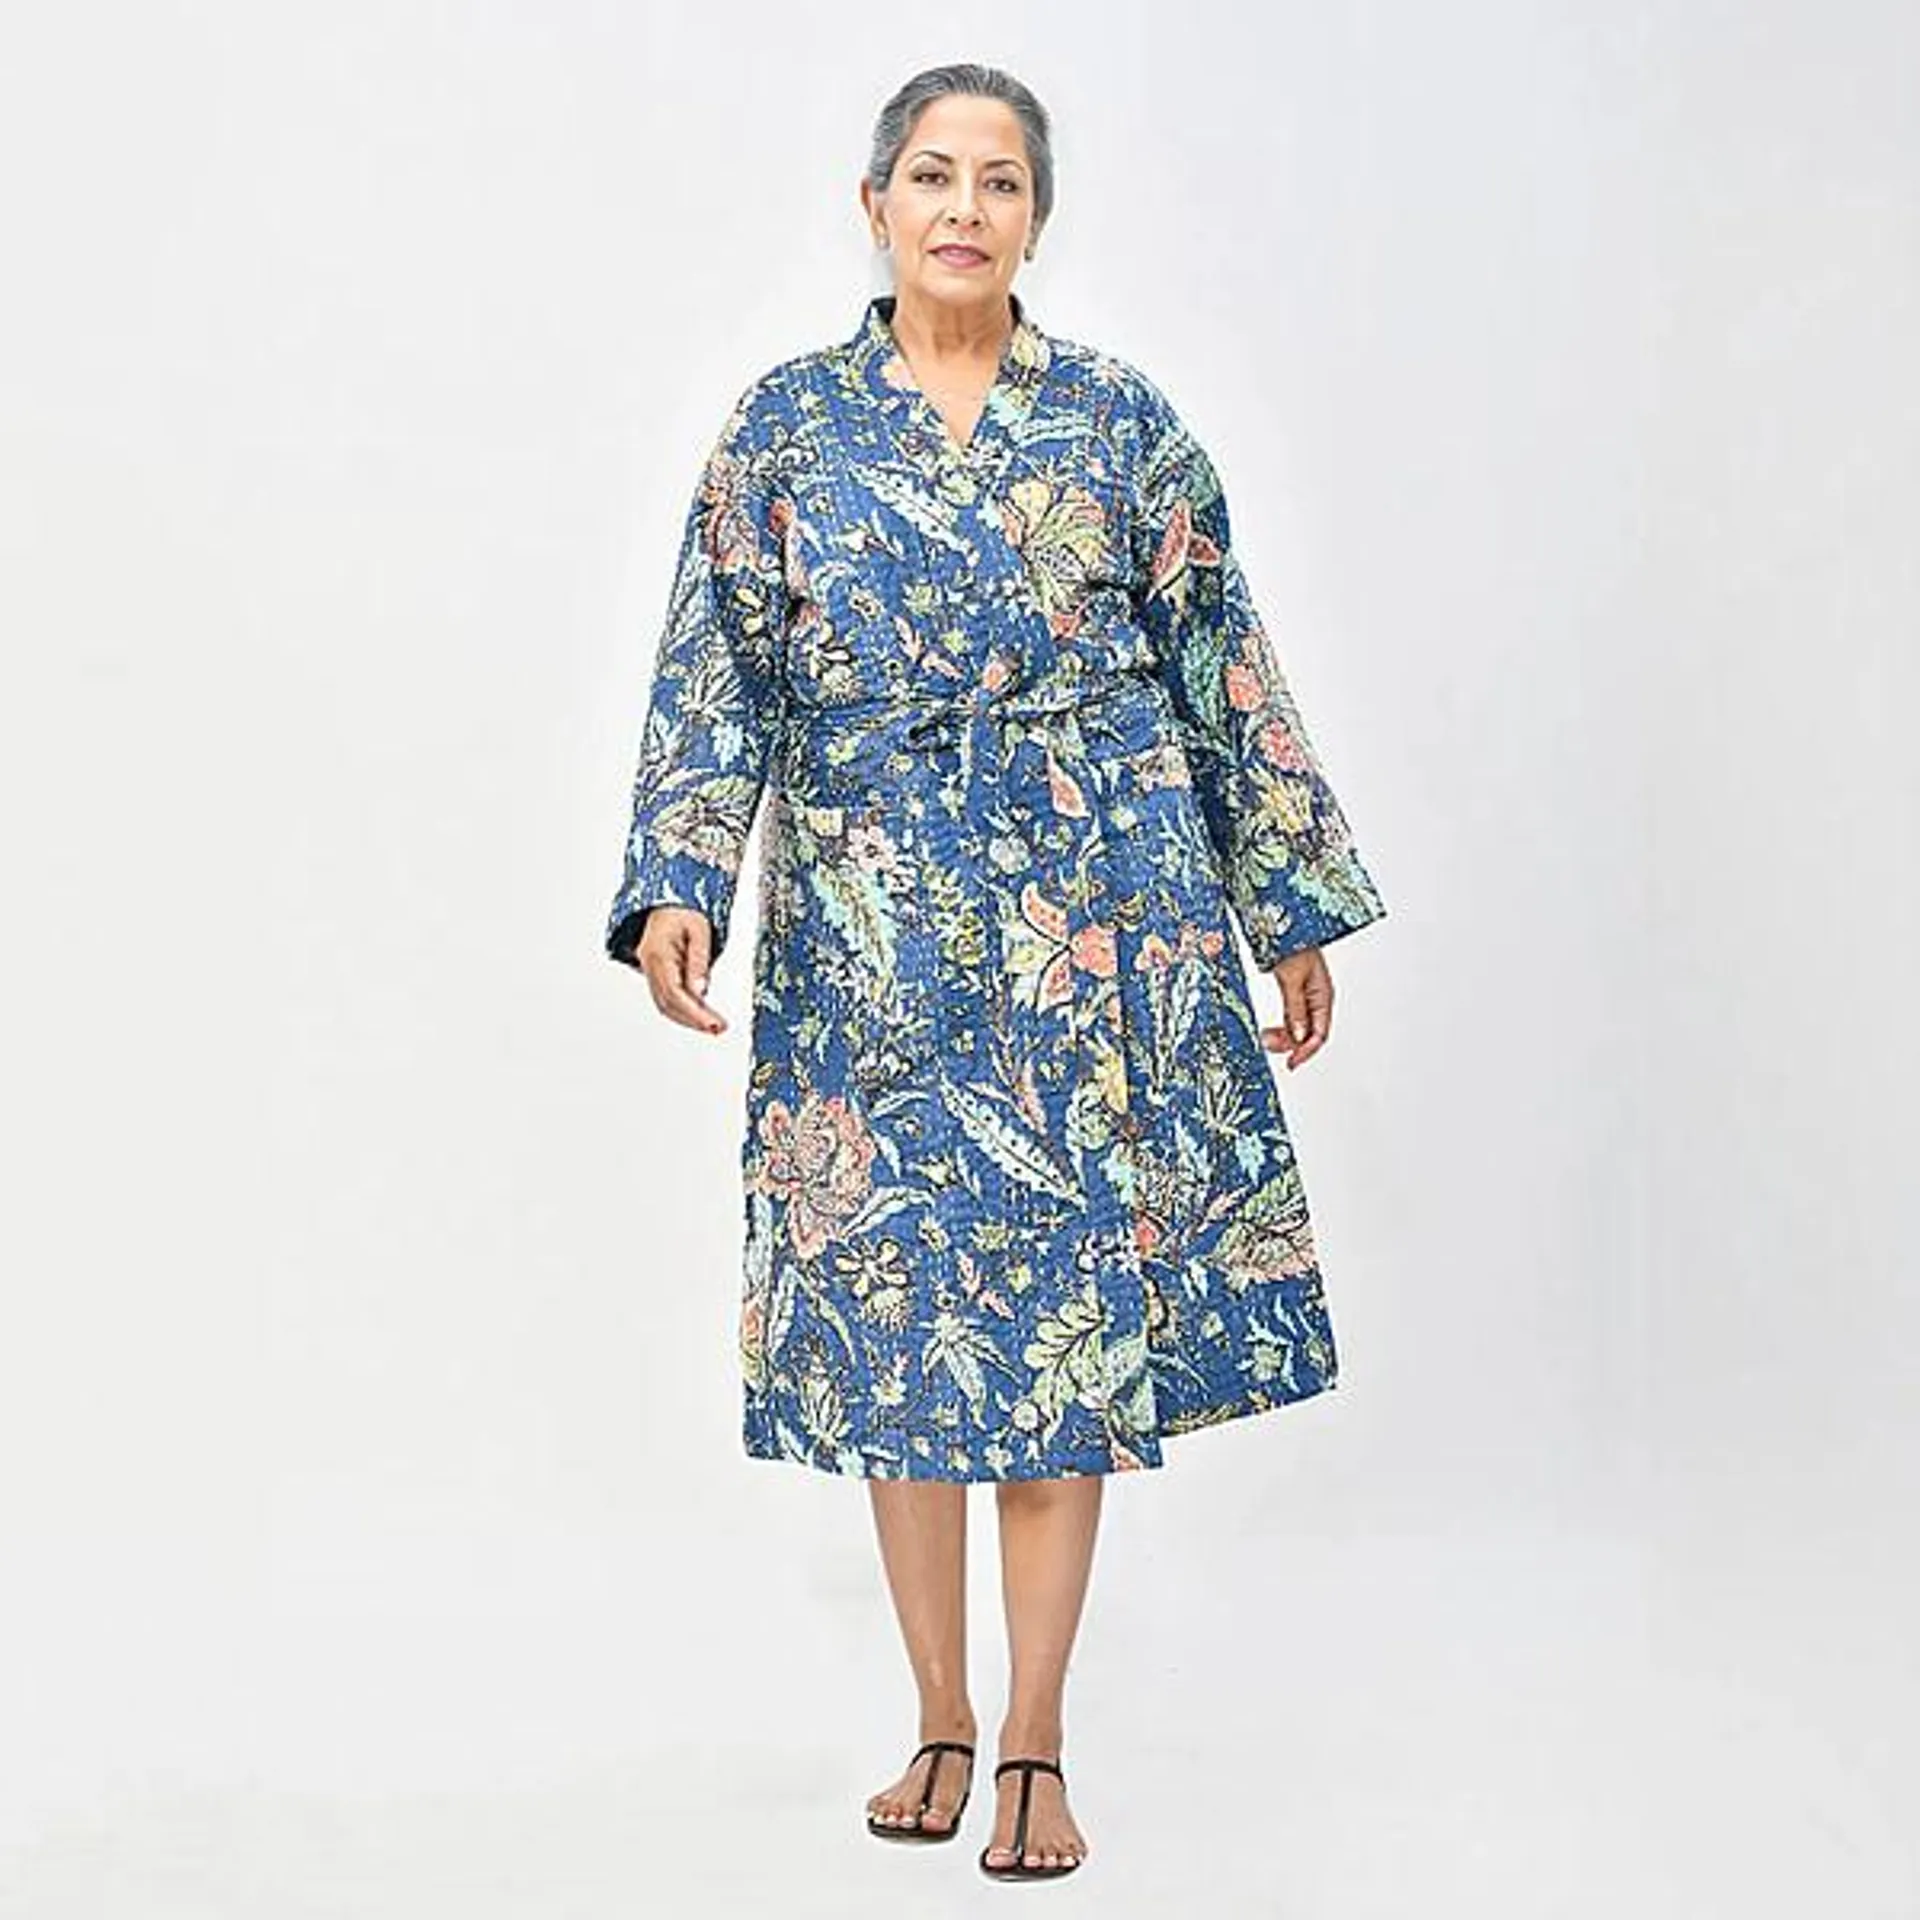 LA MAREY Cotton Printed Kantha Kimono (One Size) - Navy